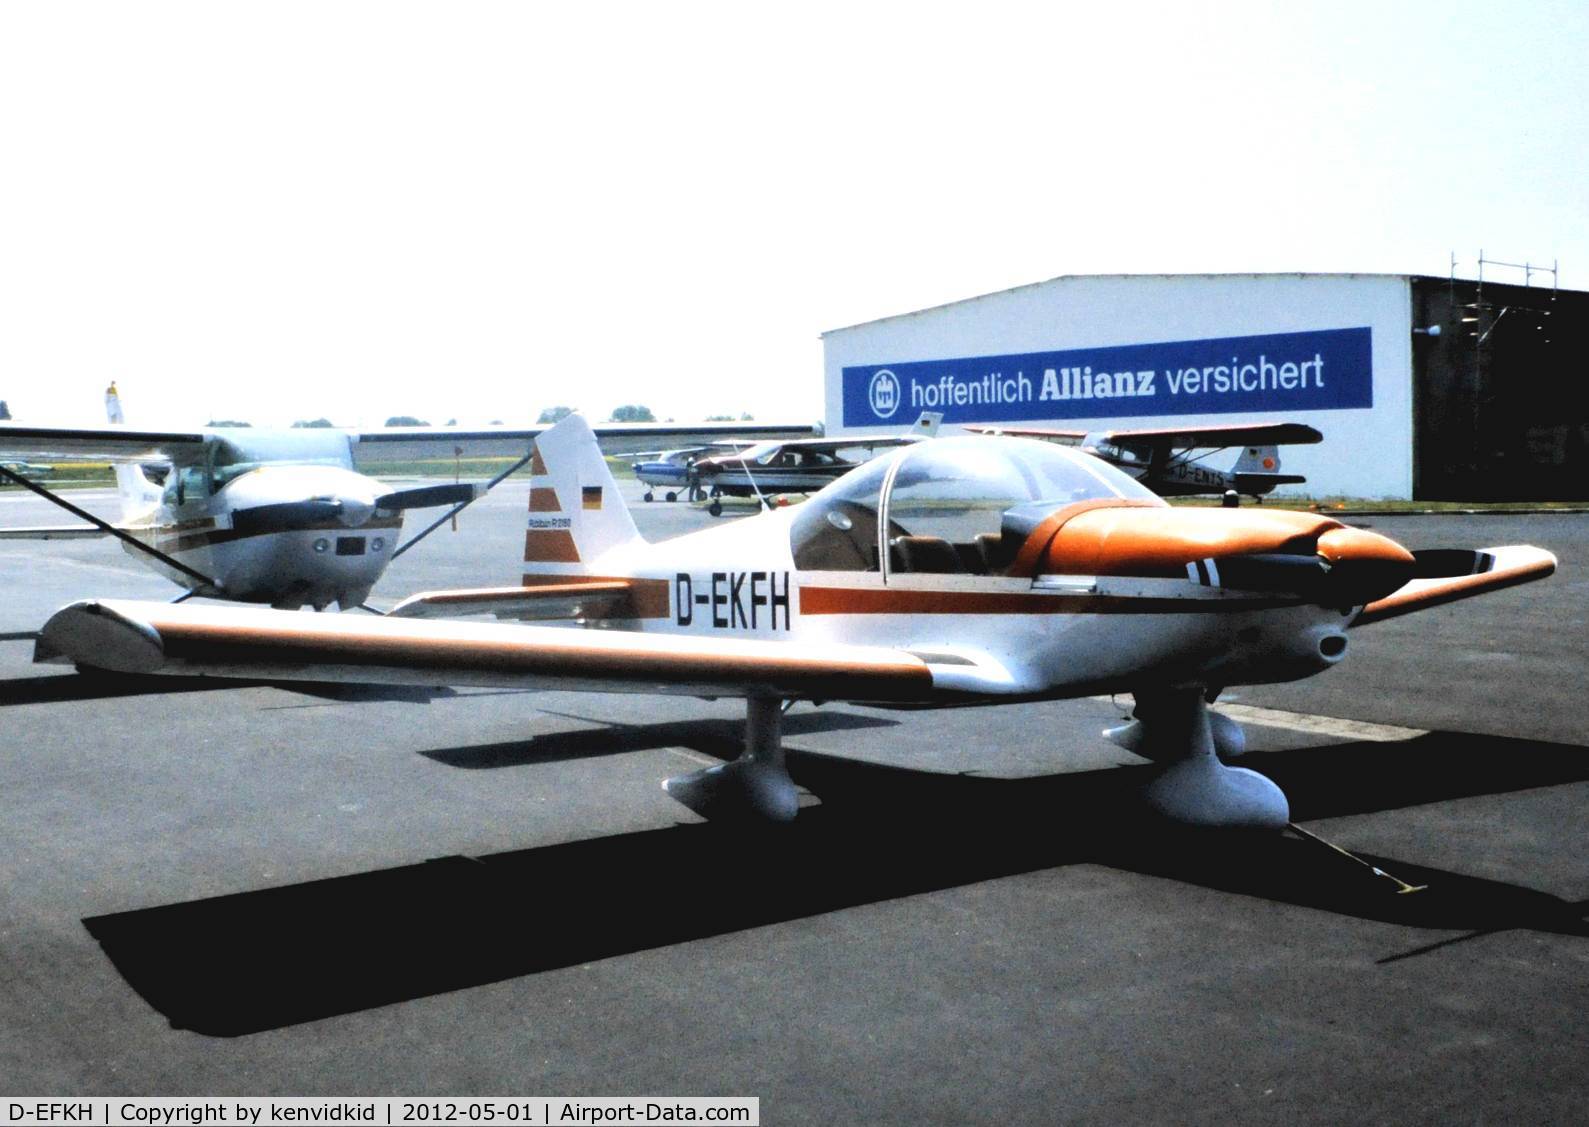 D-EFKH, 1991 Grob GF-200 C/N 20001, Early 80's Germany.